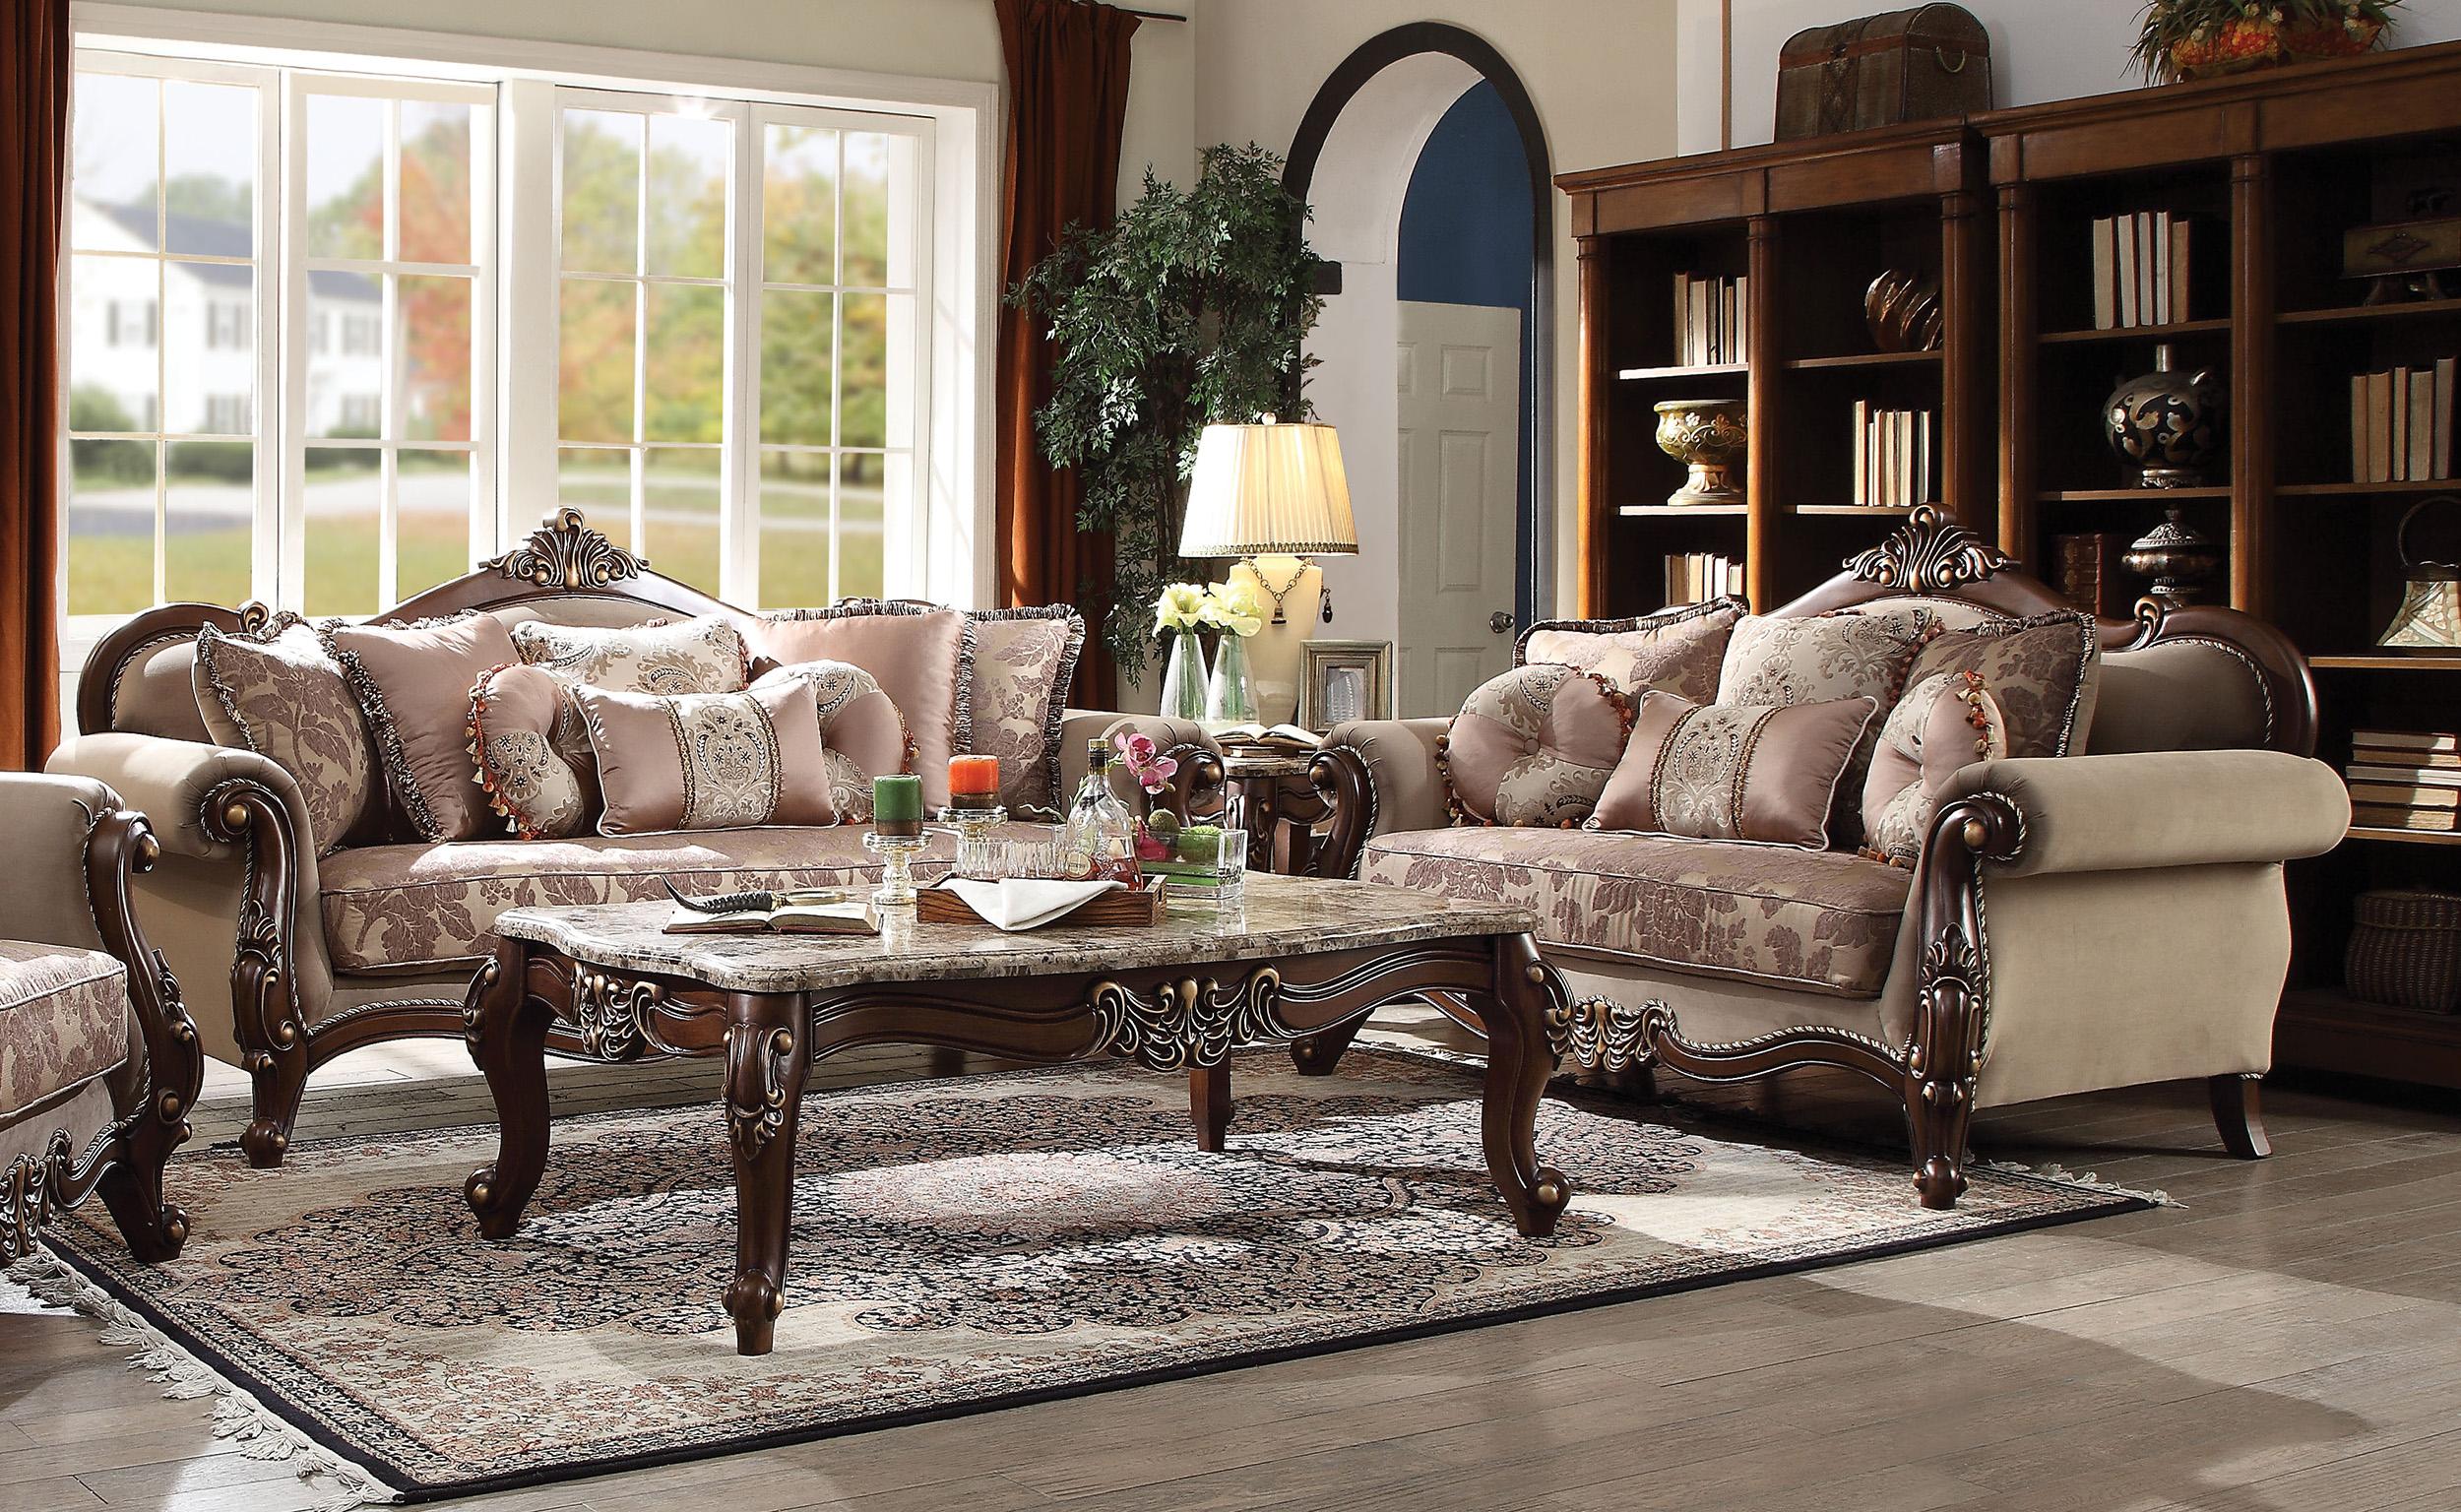 

        
Acme Furniture Mehadi 50690 Sofa Walnut/Tan/Beige Fabric 0840412152443
